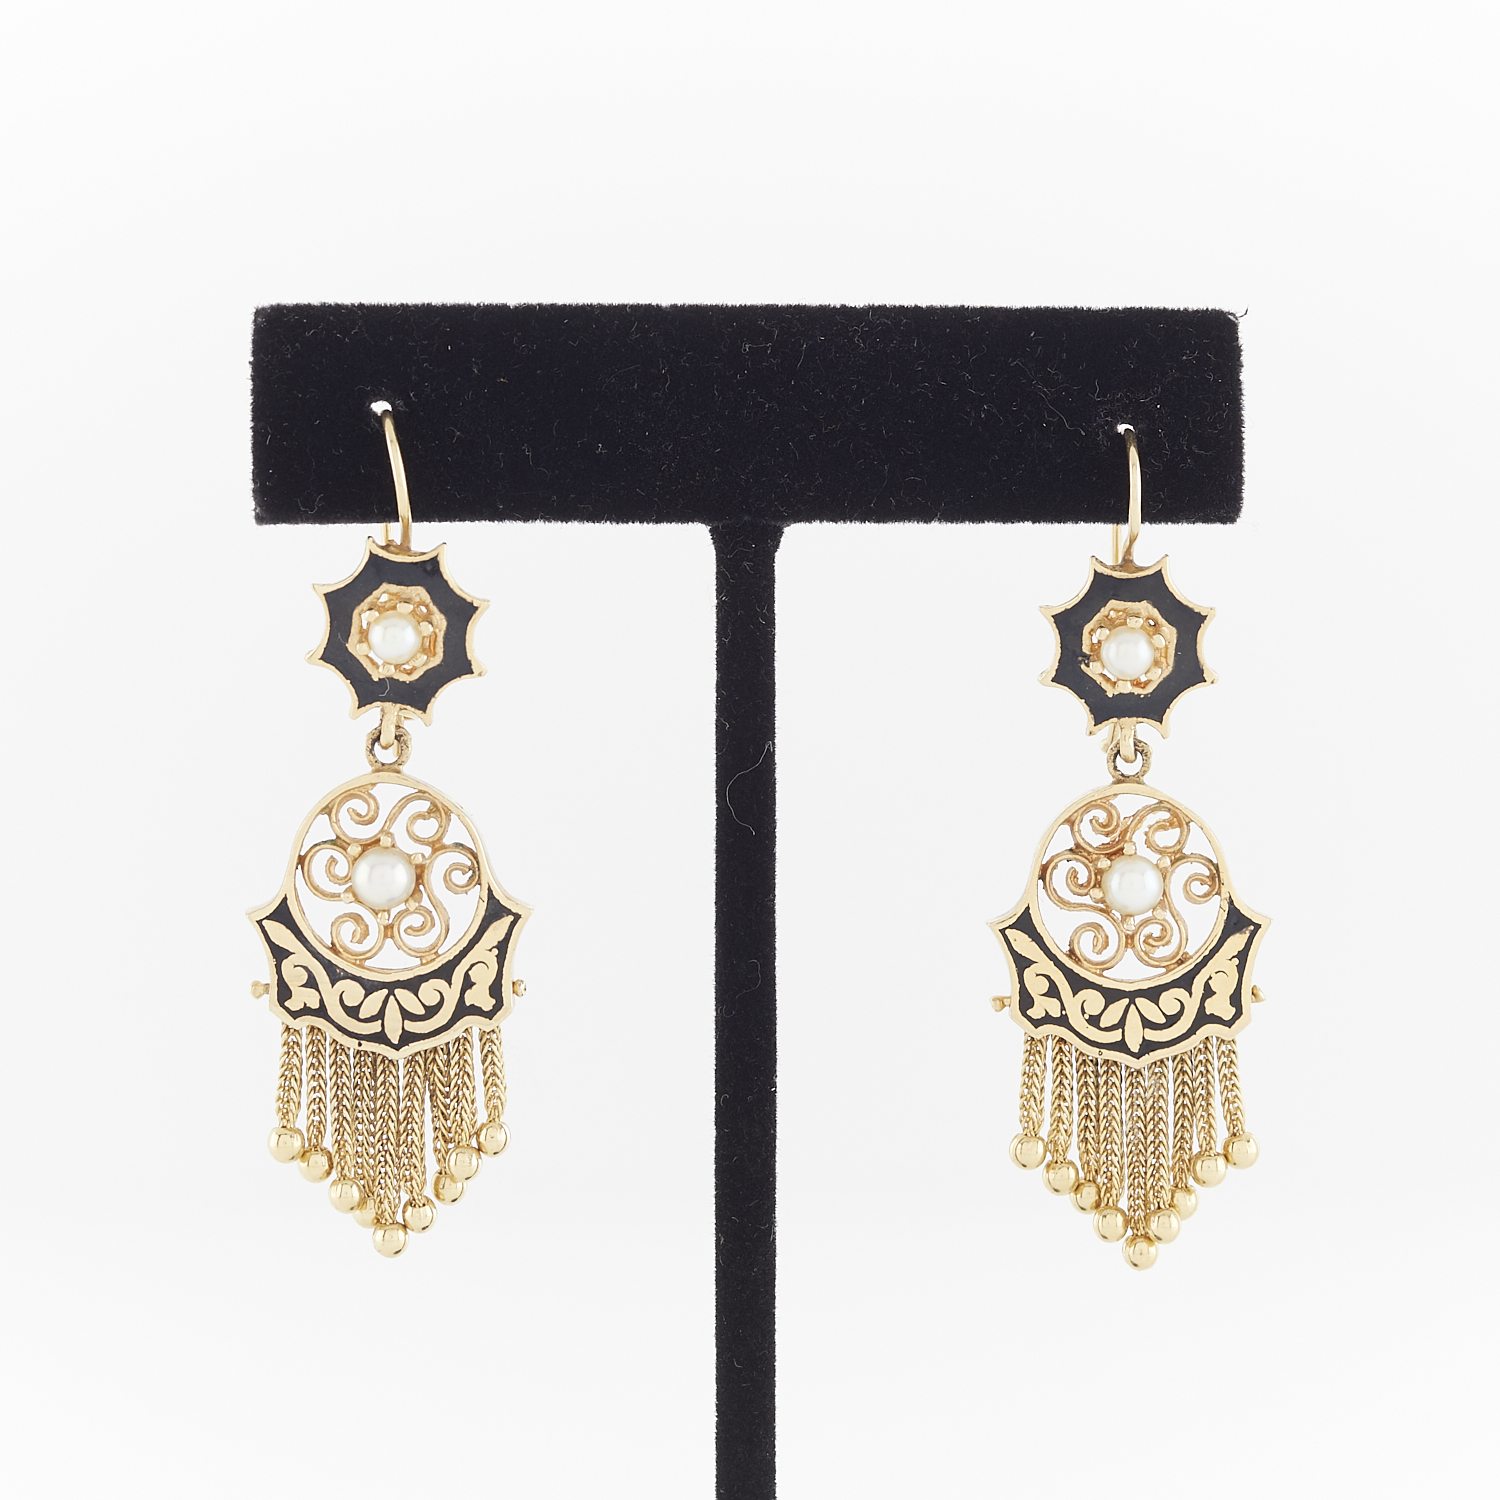 14k Yellow Gold & Enamel Victorian Tassel Earrings - Image 2 of 5